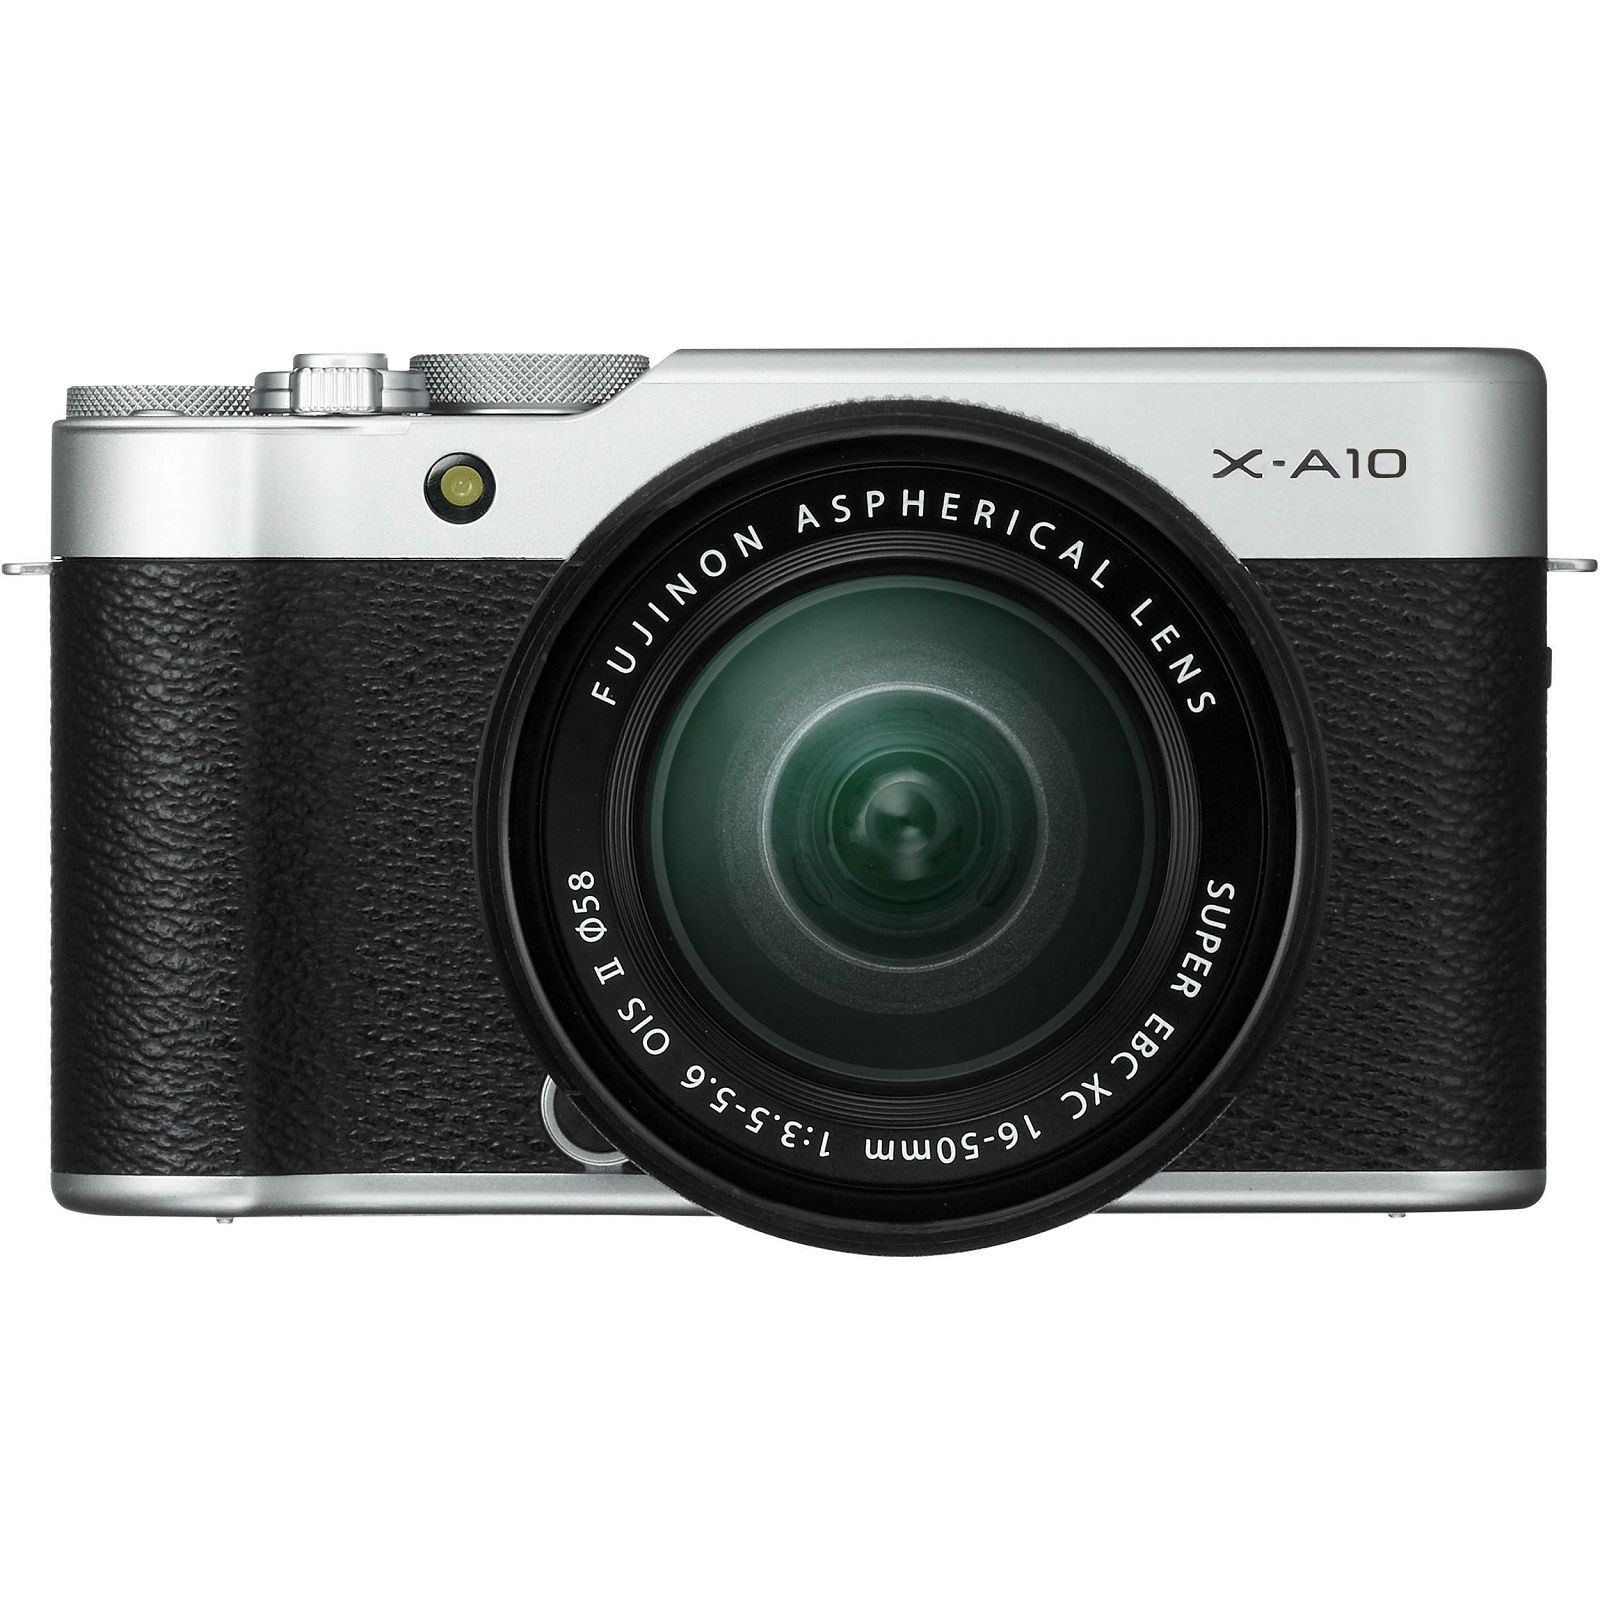 Fujifilm X-A10 + XC 16-50 II KIT digitalni mirrorless fotoaparat s objektivom 16-50mm f3.5-5.6 OIS II Fuji Body 16 MP APS-C 3.0" 1040k Tiltable and lens